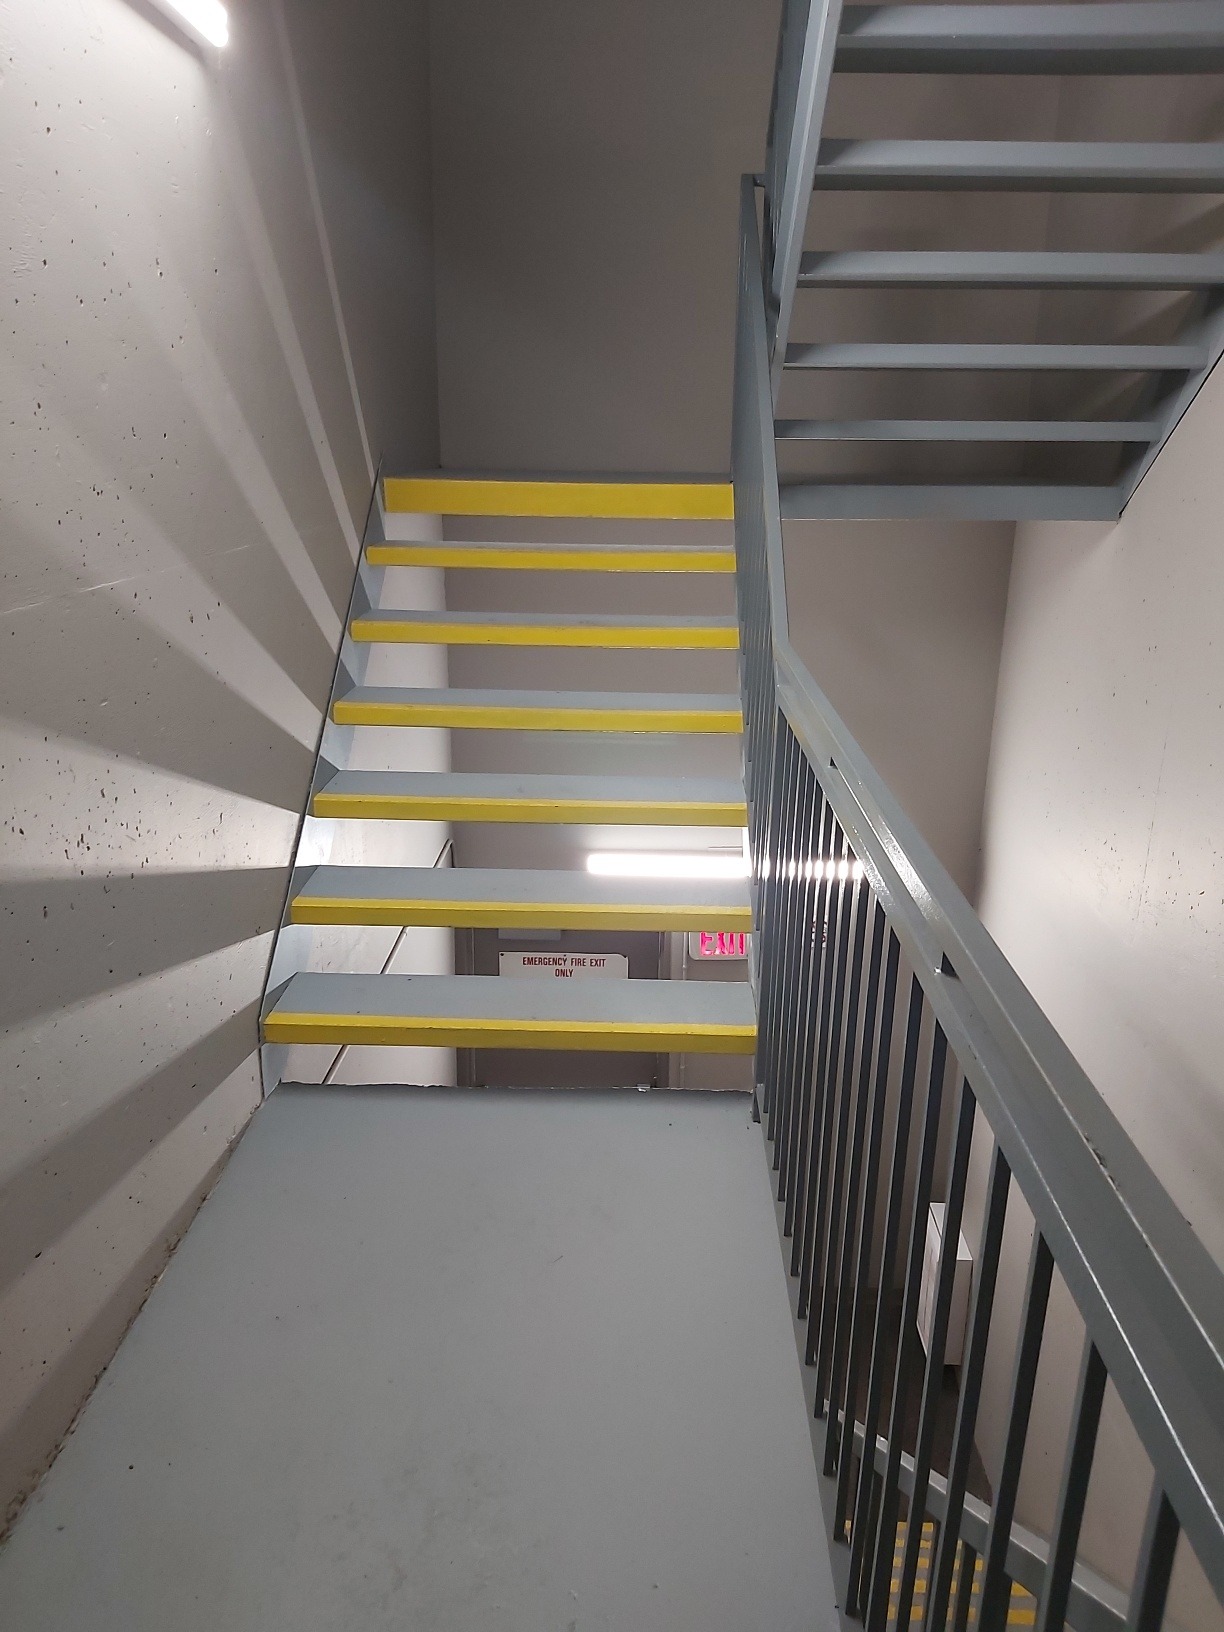 Corridor-stairwells-2